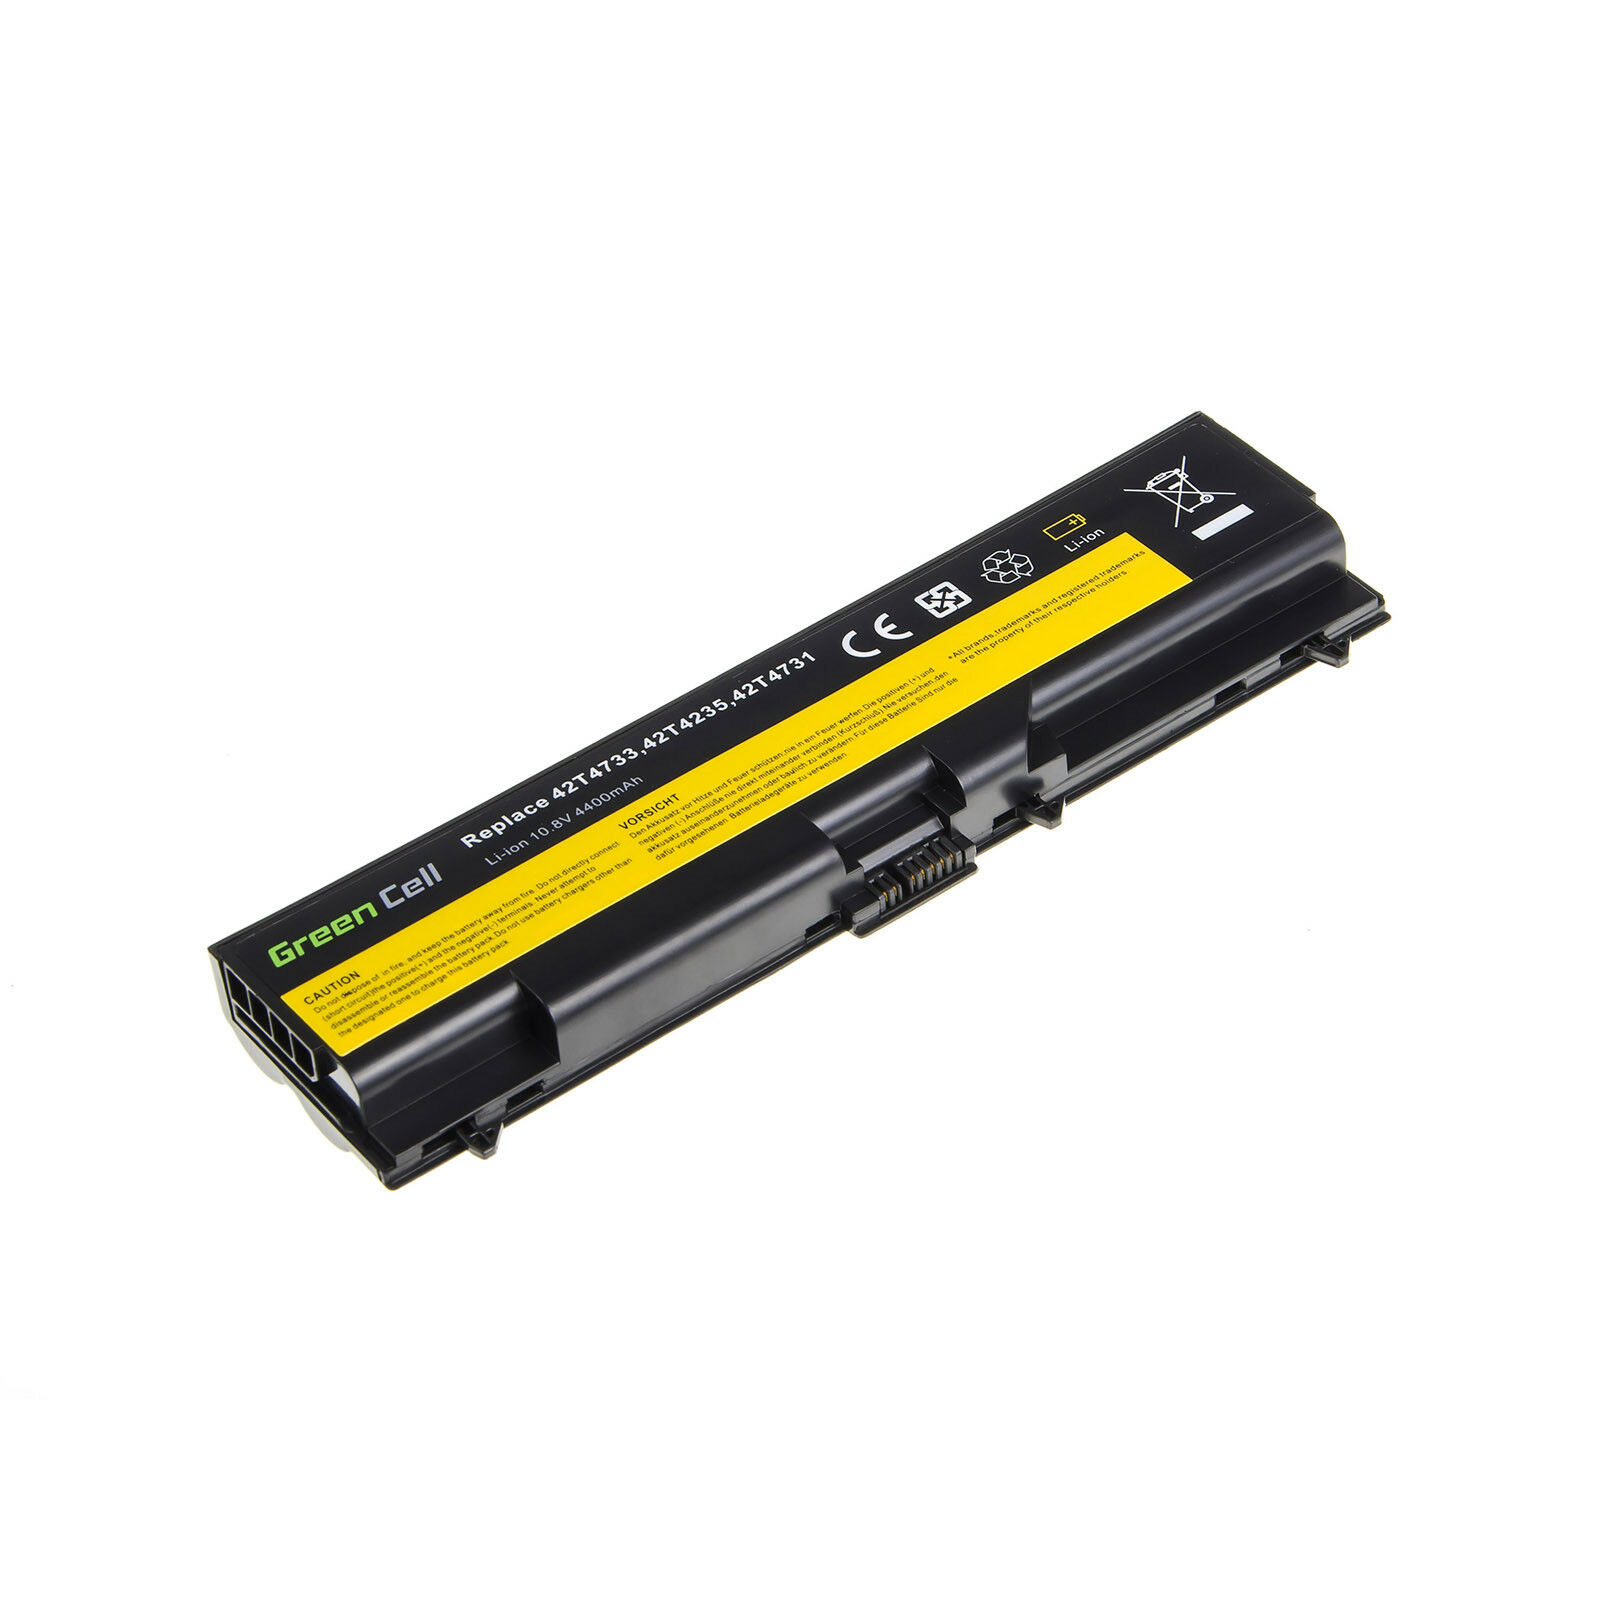 Batterie pour 45N1001 Lenovo ThinkPad T430 T430i T530 T530i W530 L430 L530 (compatible)